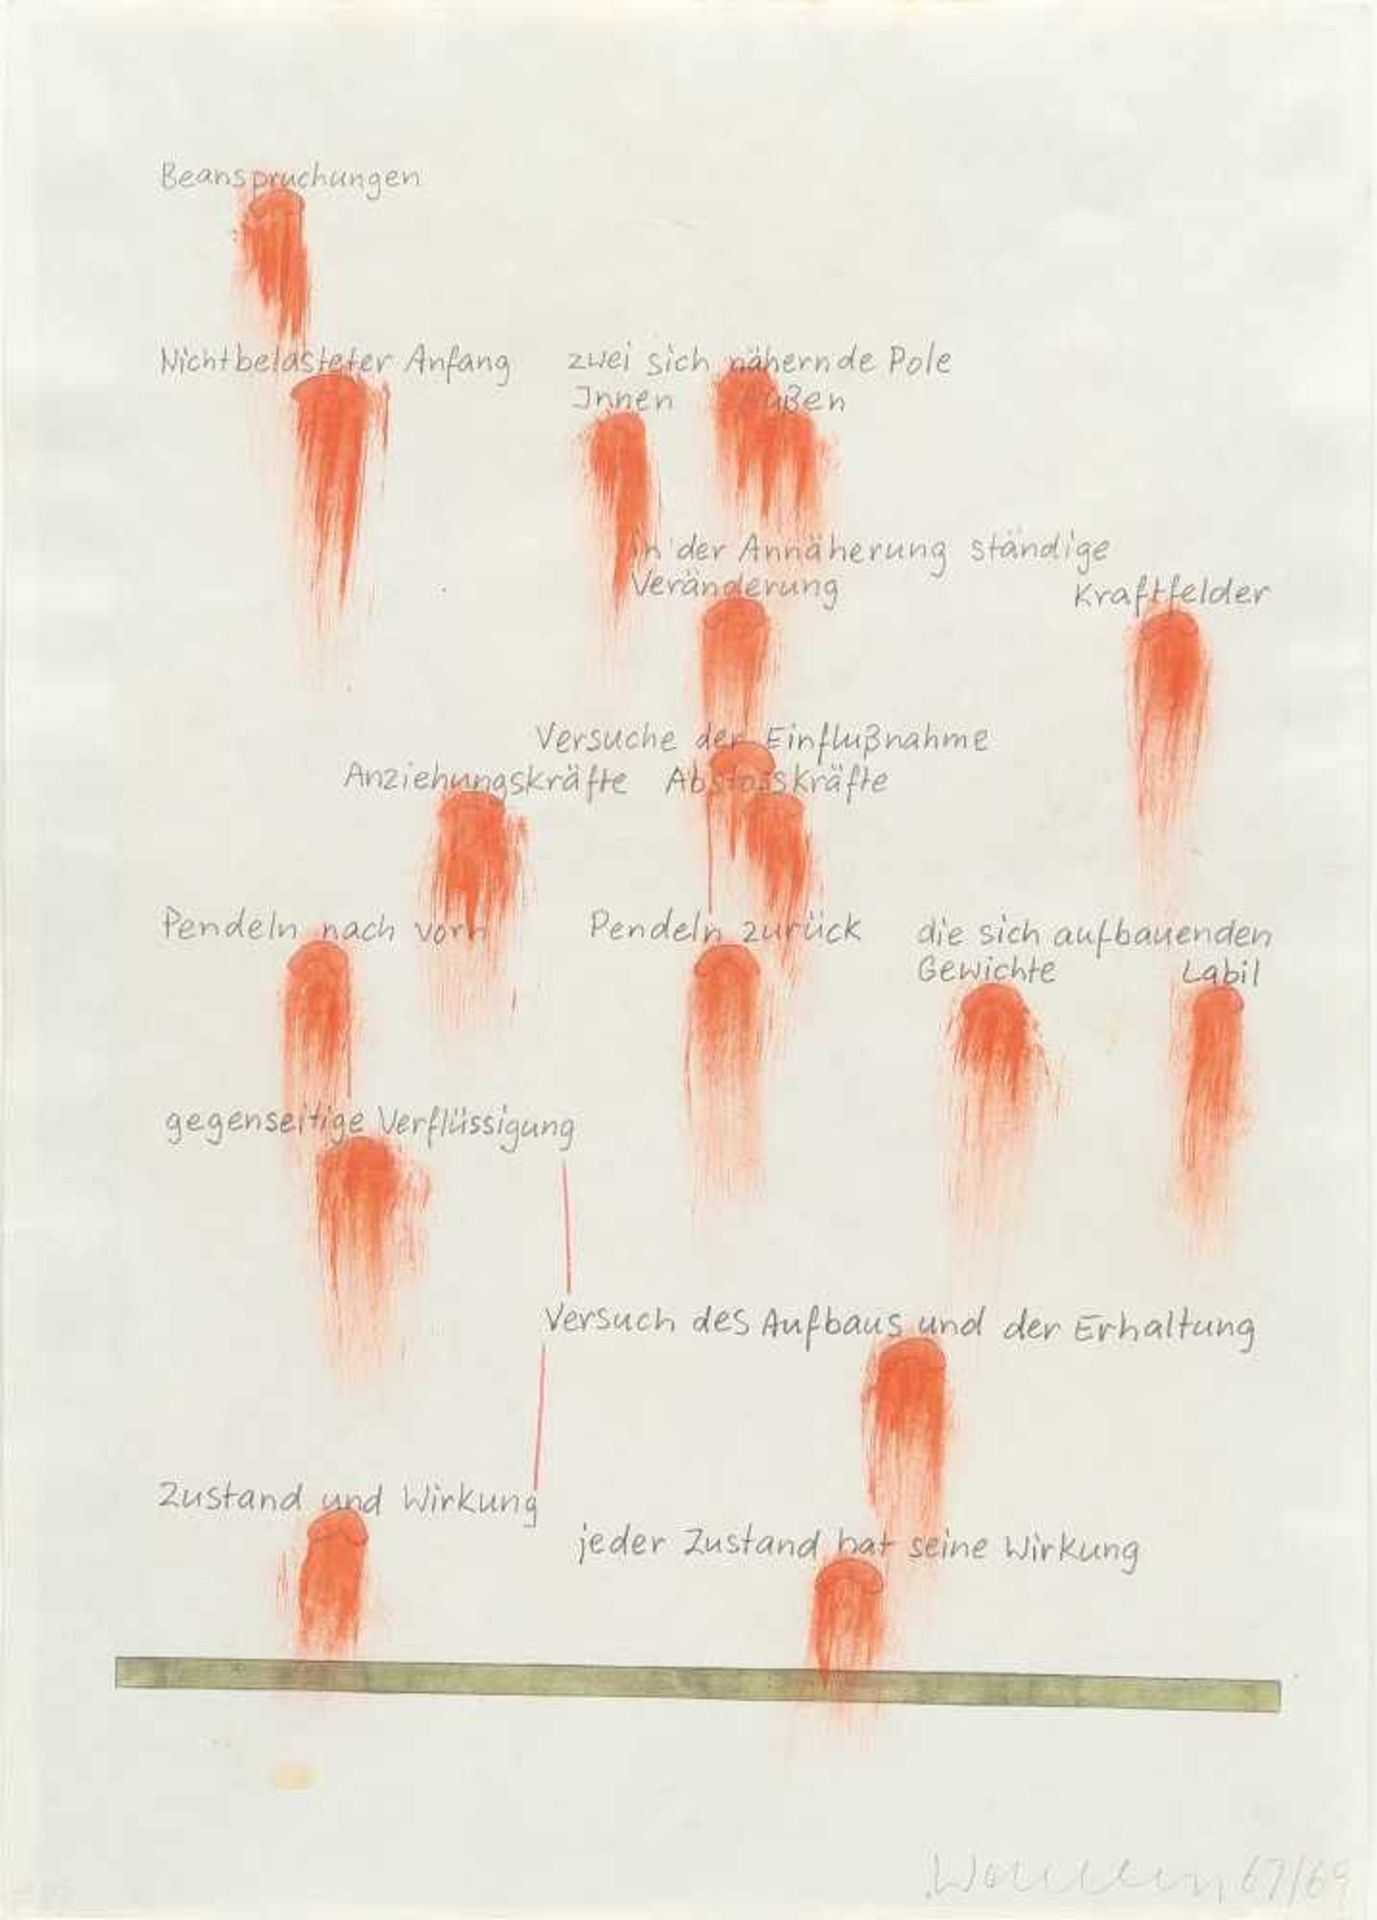 FRANZ ERHARD WALTHER - Recto - Verso: Werkzeichnung Mischtechnik auf dünnem Zeichenpapier. (19)67/